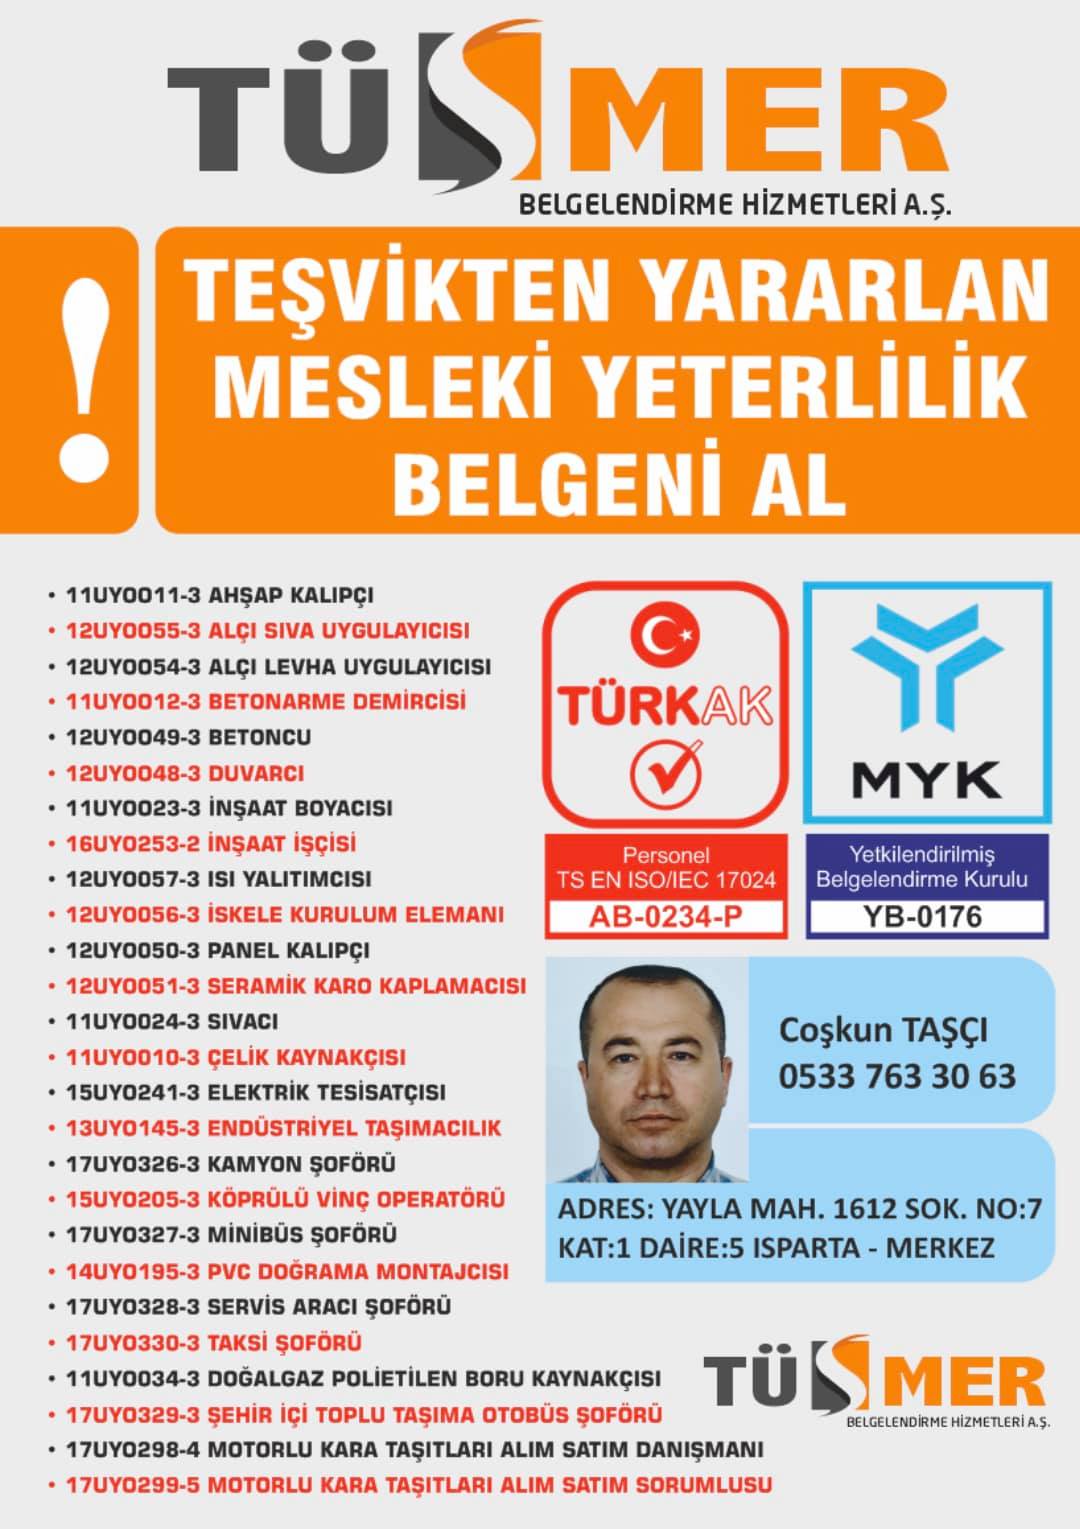 MYK MESLEKİ YETERLİLİK BELGESİ MimarsinanAtaşehir İstanbul